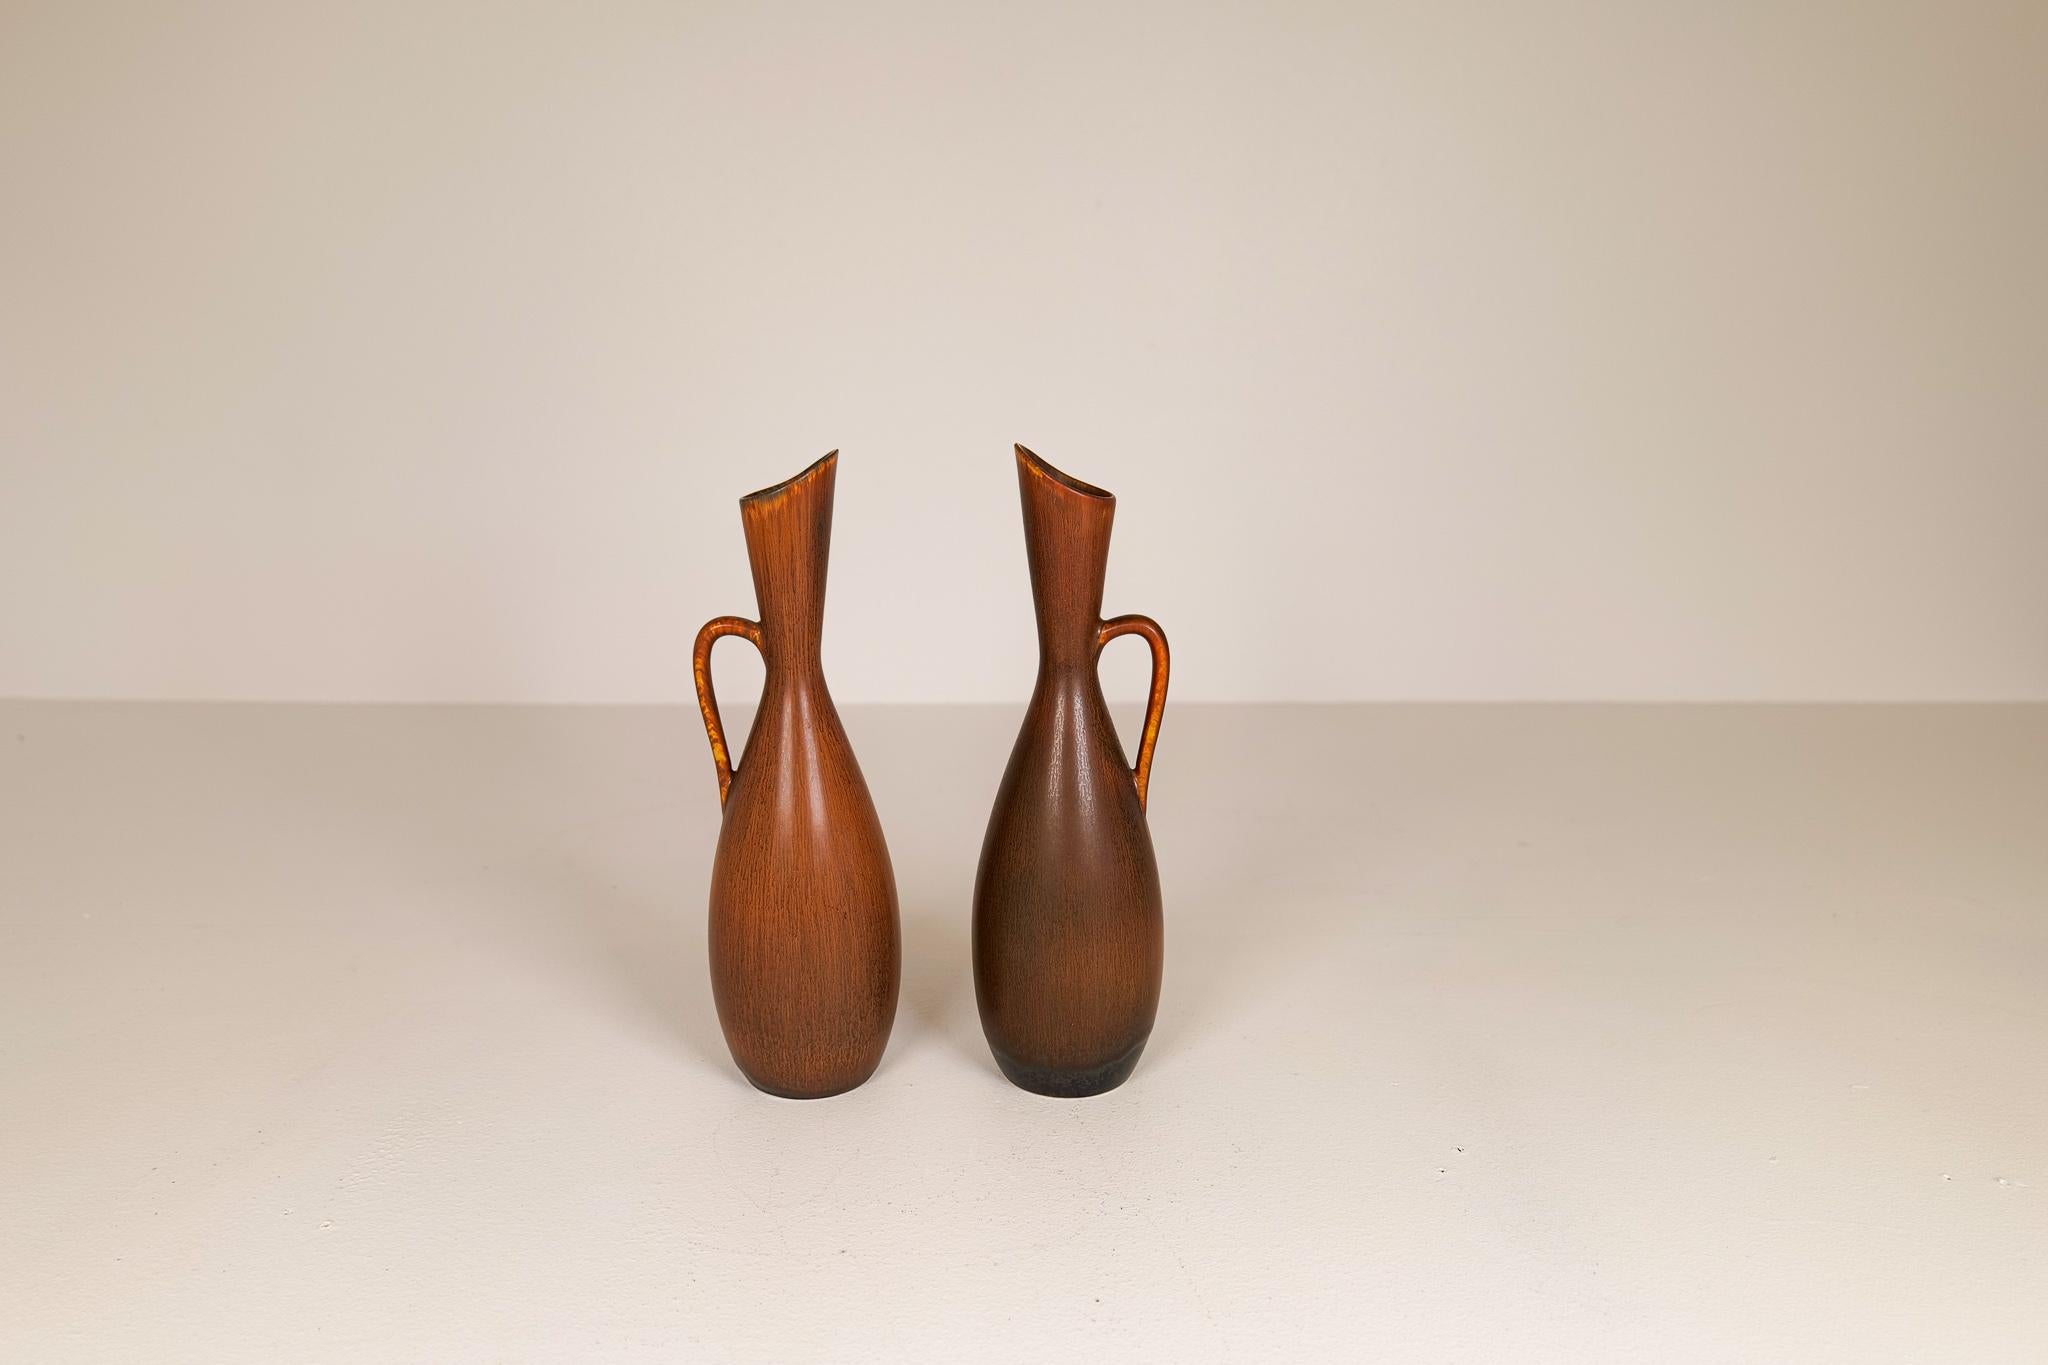 Swedish Midcentury Modern Vases Rörstrand Carl Harry Stålhane, Sweden, 1950s For Sale